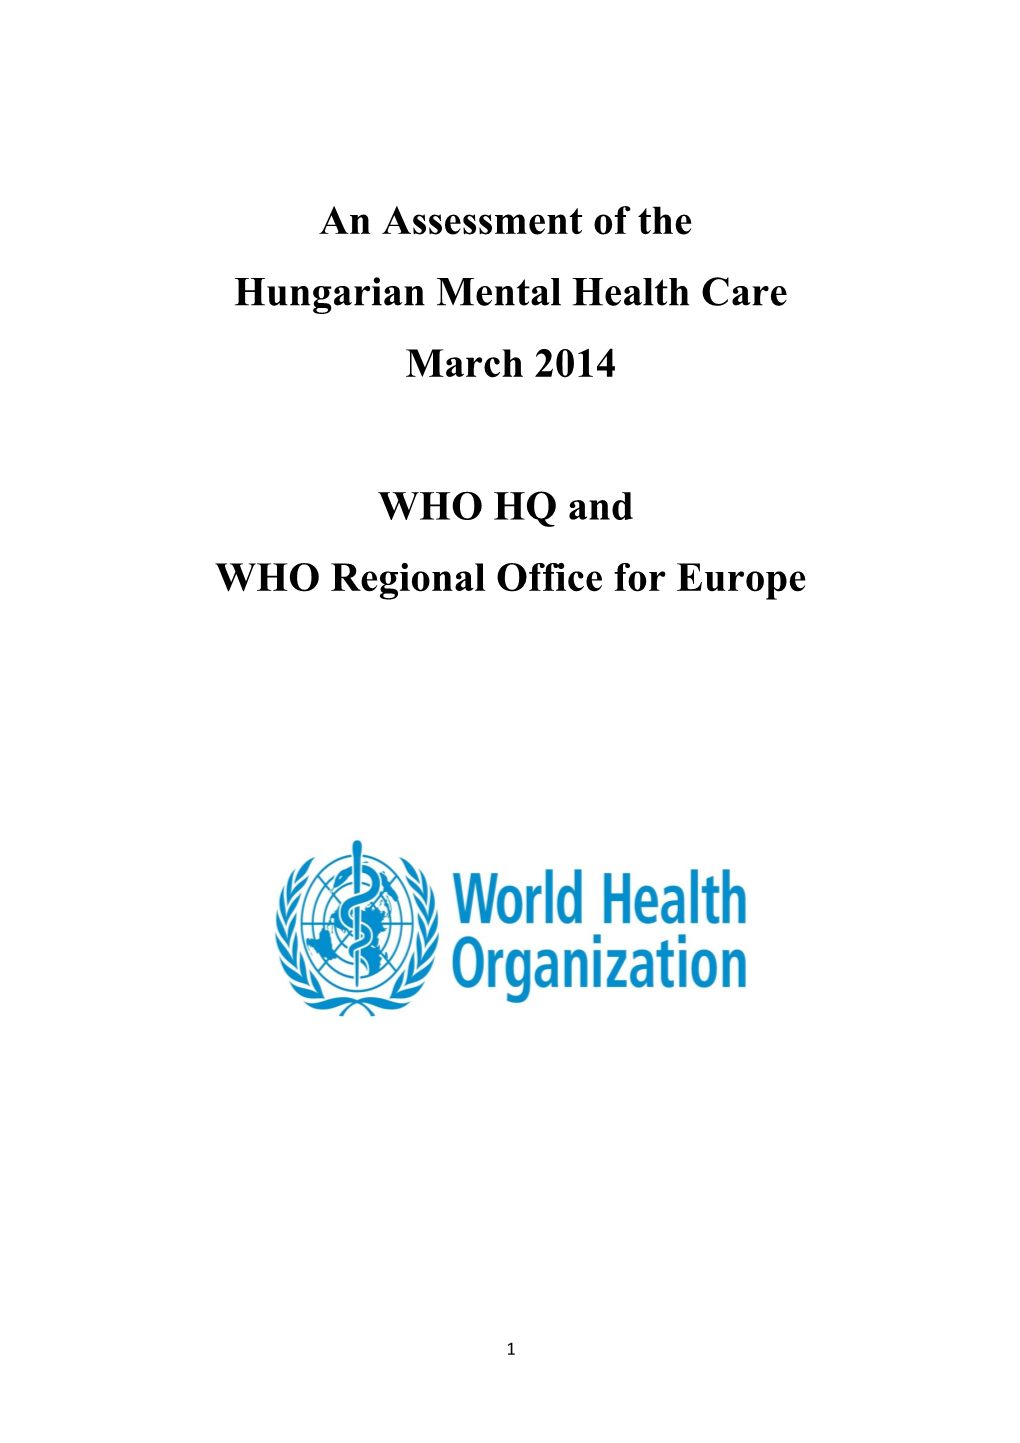 Hungarian Mental Health Care